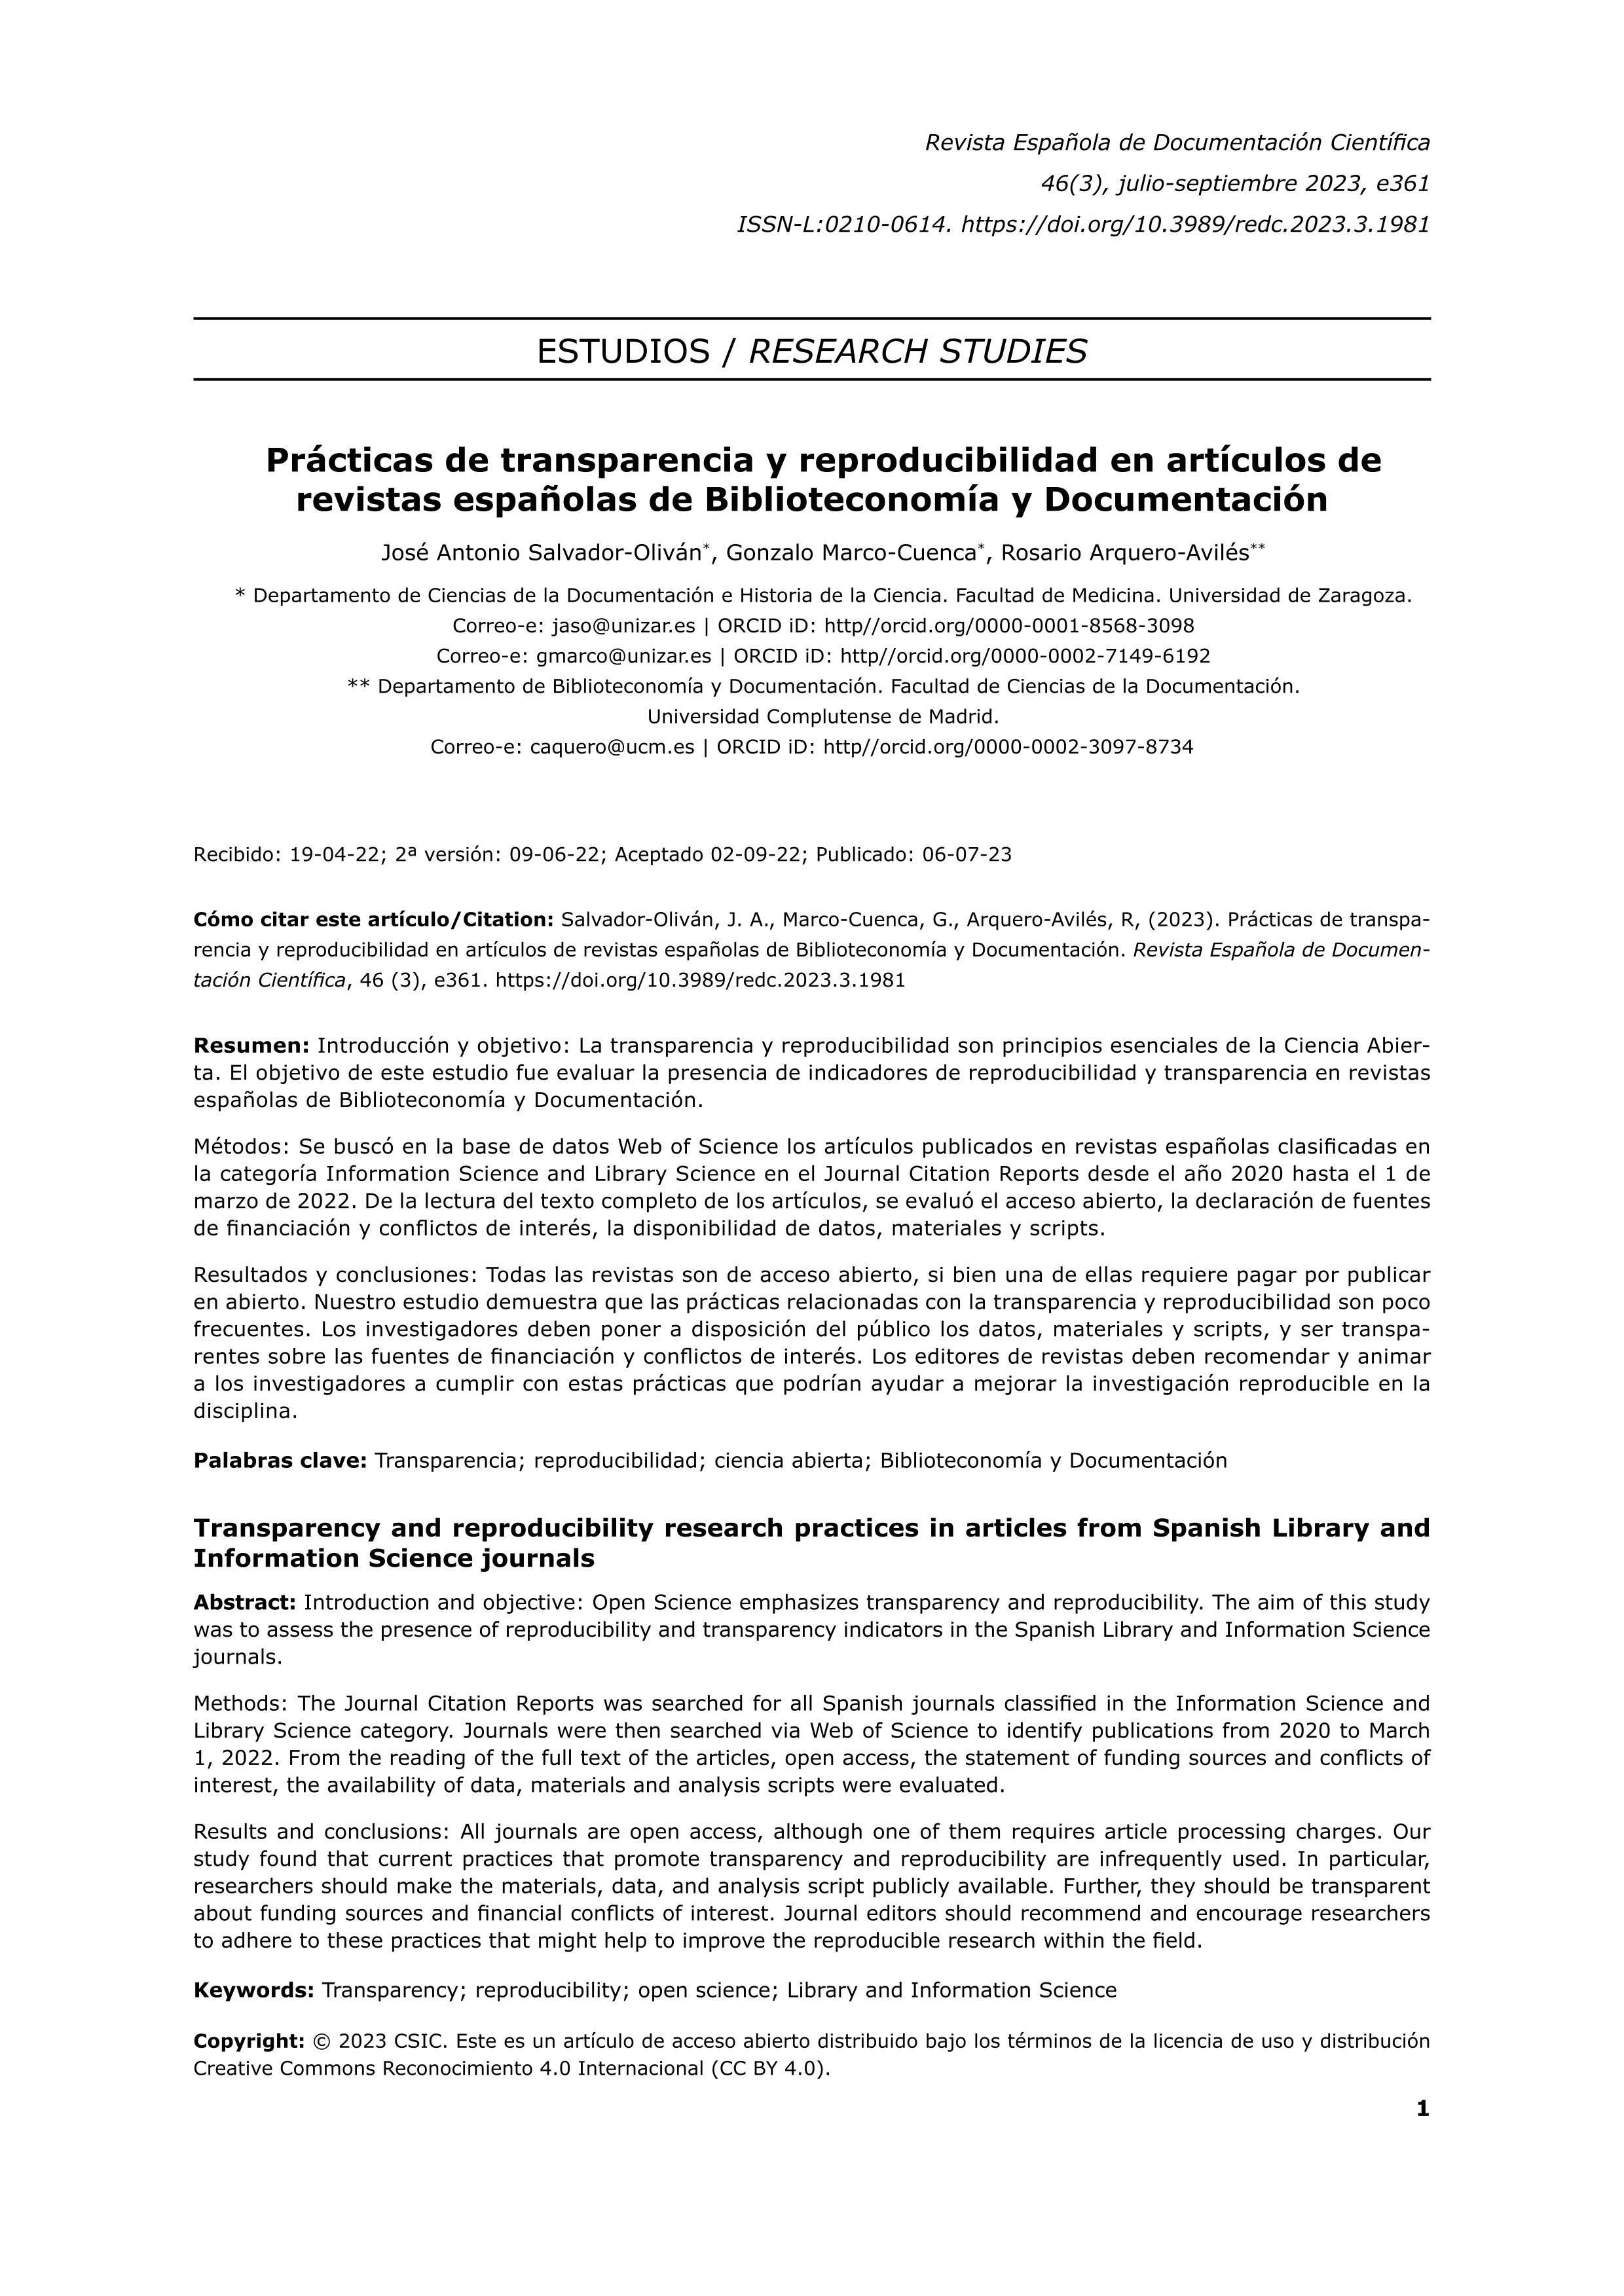 Prácticas de transparencia y reproducibilidad en artículos de revistas españolas de Biblioteconomía y Documentación